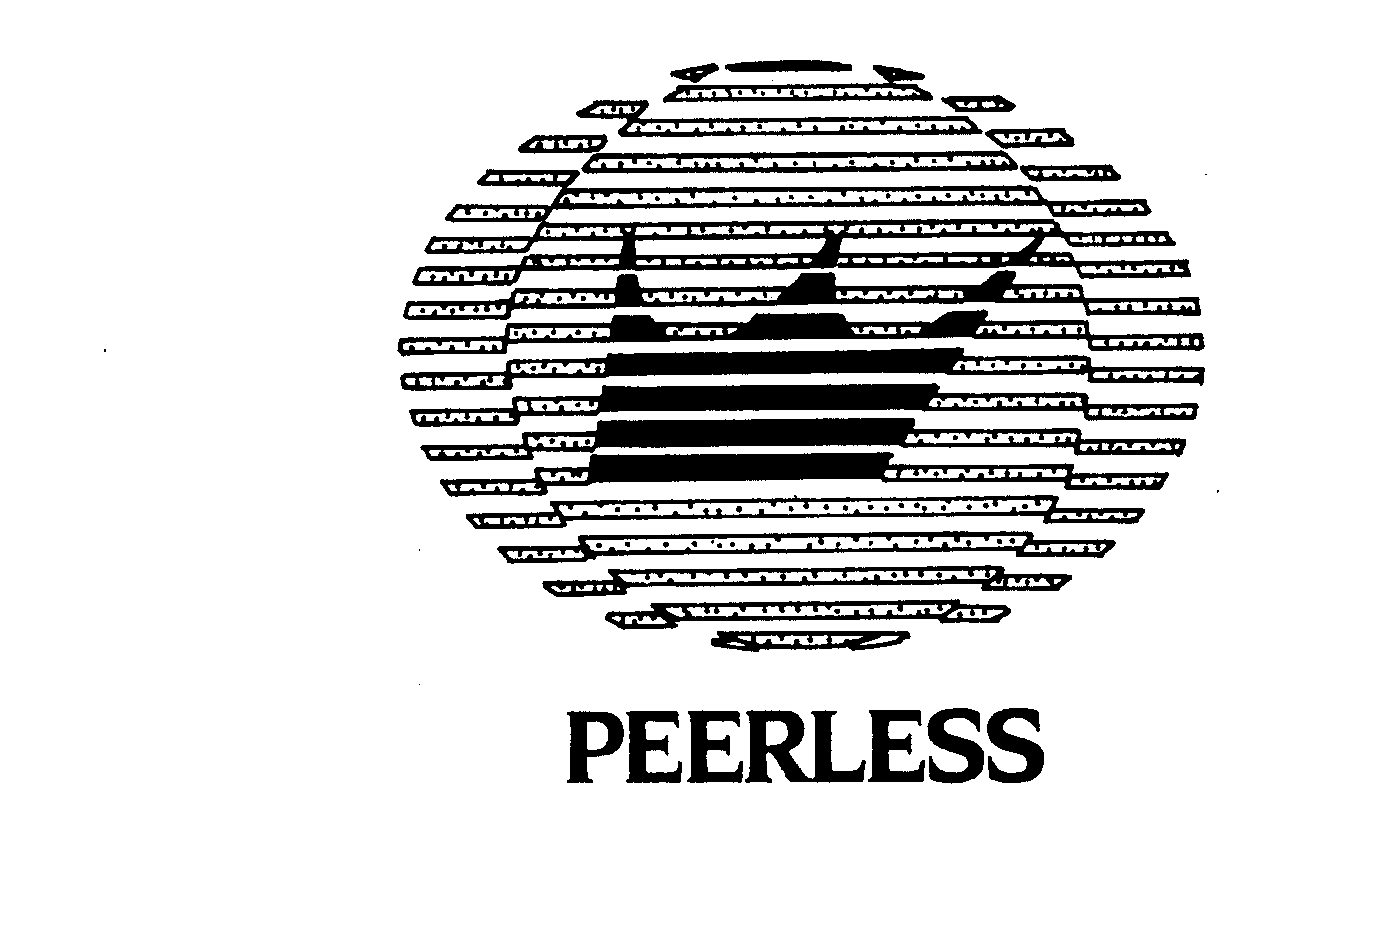  PEERLESS